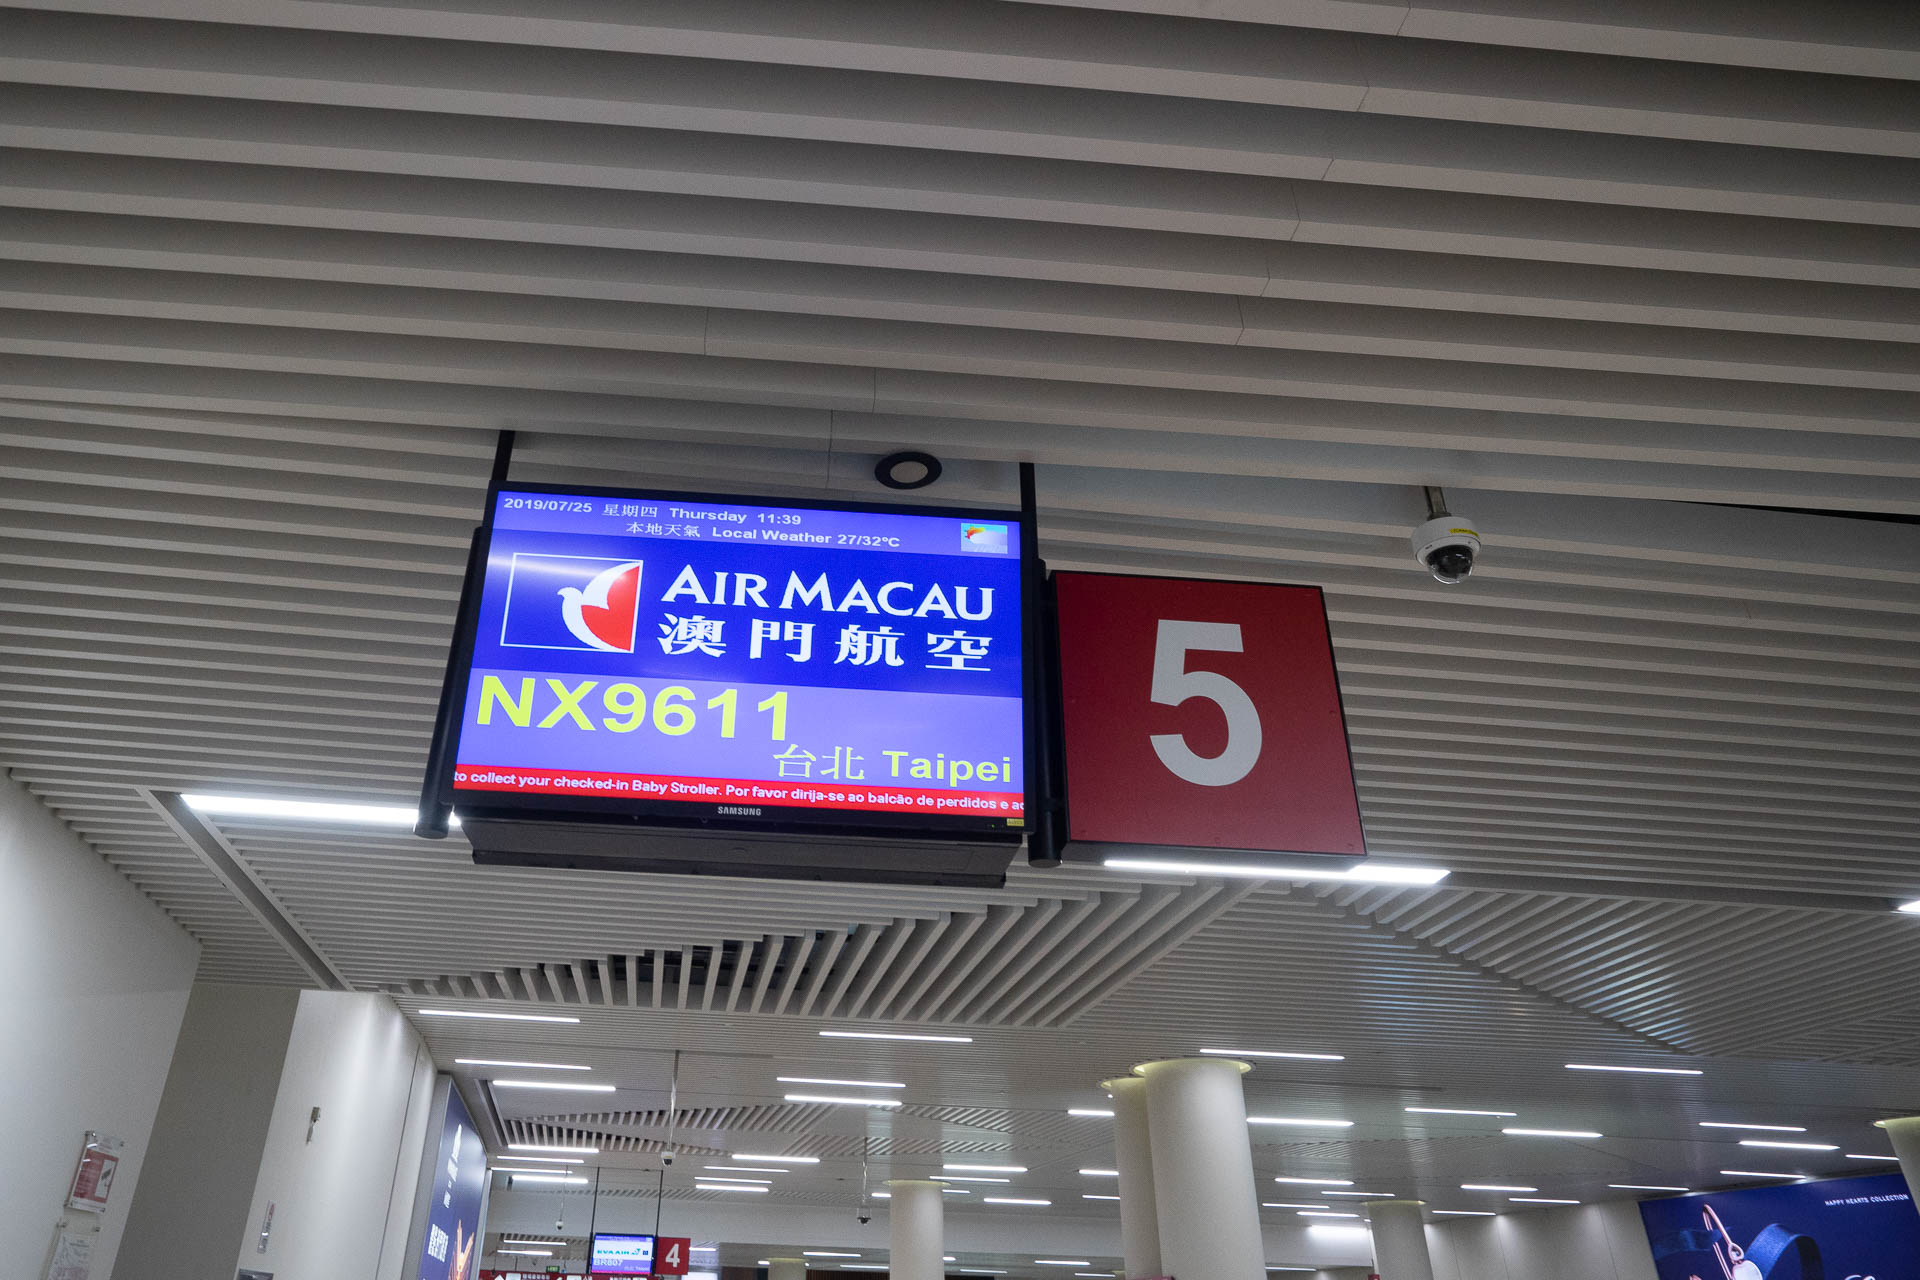 【飛行紀錄】澳門航空Air Macau -台北澳門來回NX9611、NX620